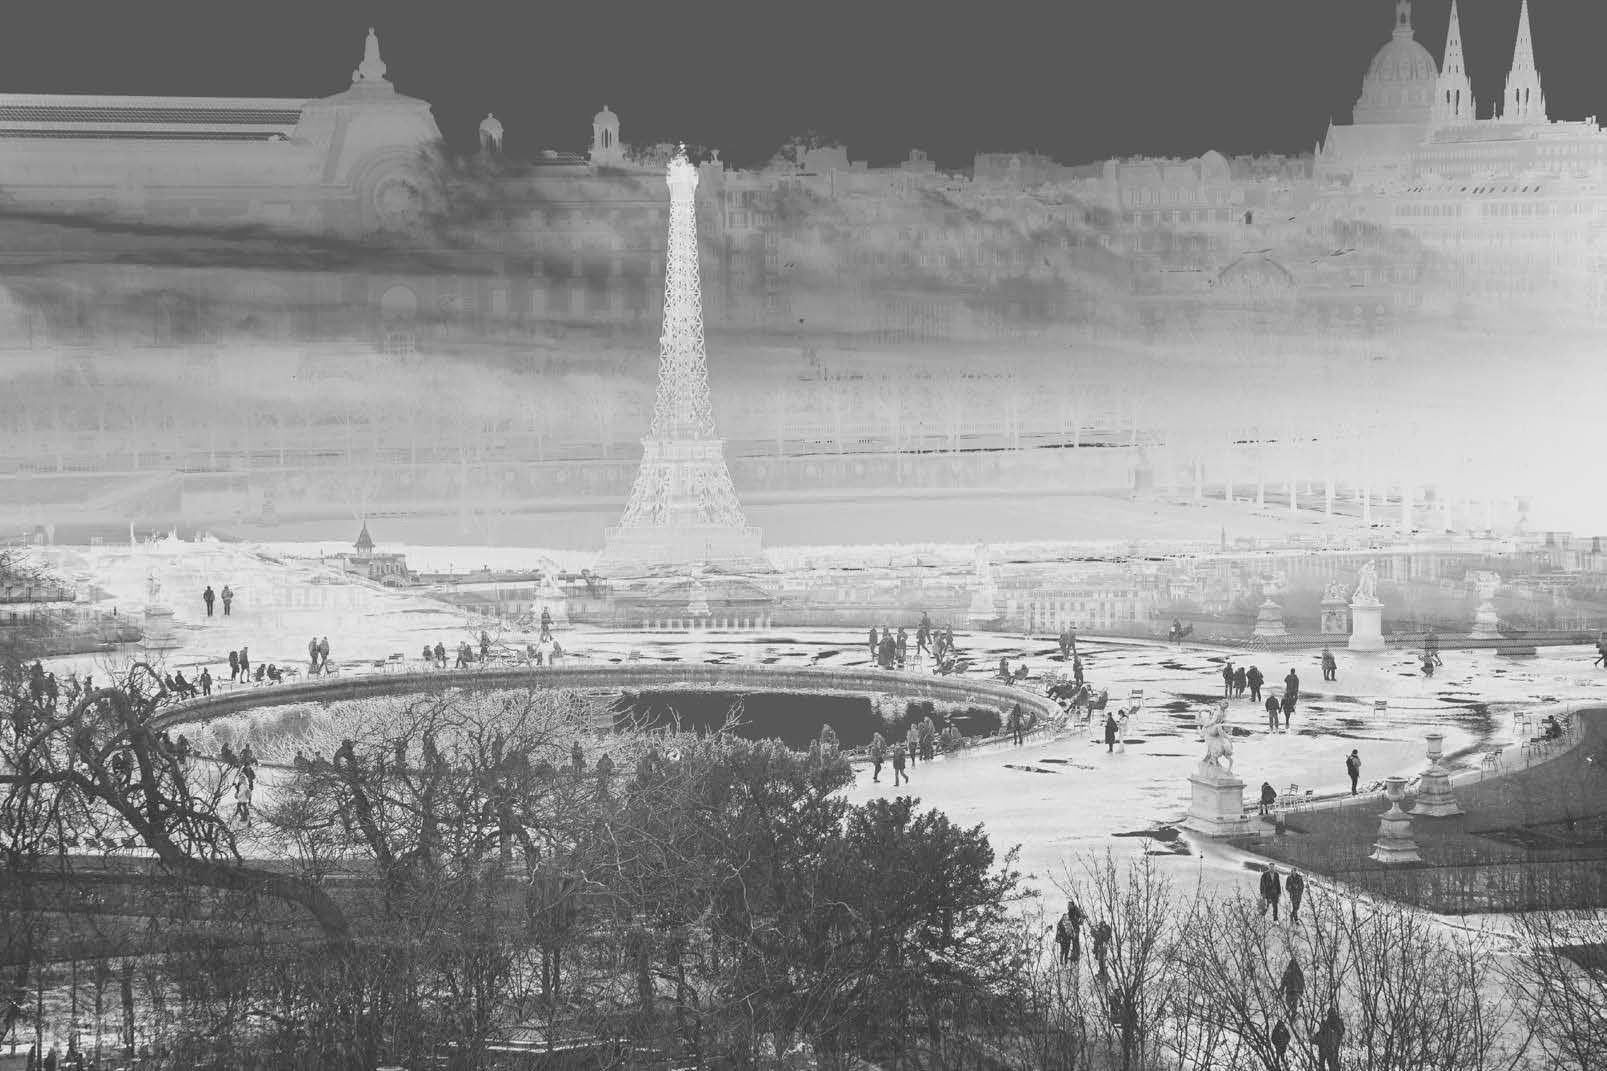 Une superposition de quelques-uns des quartiers les plus animés de Paris - les Tuileries, la Tour Eiffel et Montemartre - présentés dans un négatif fantomatique.

 